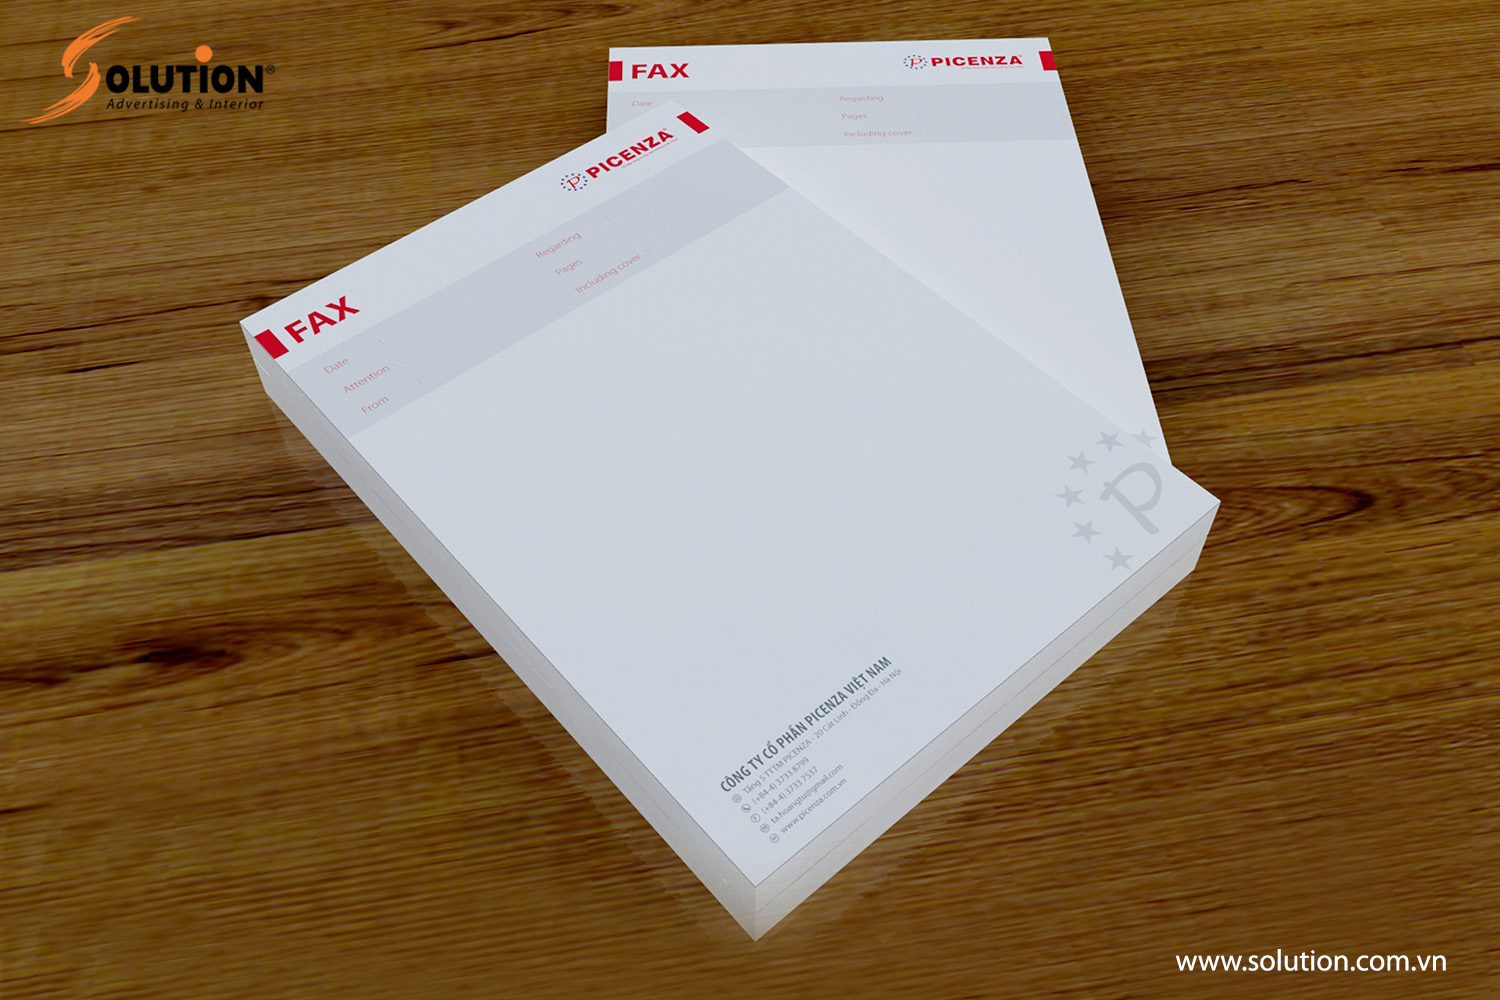 Mẫu thiết kế tờ fax trong bộ nhận diện thương hiệu Picenza